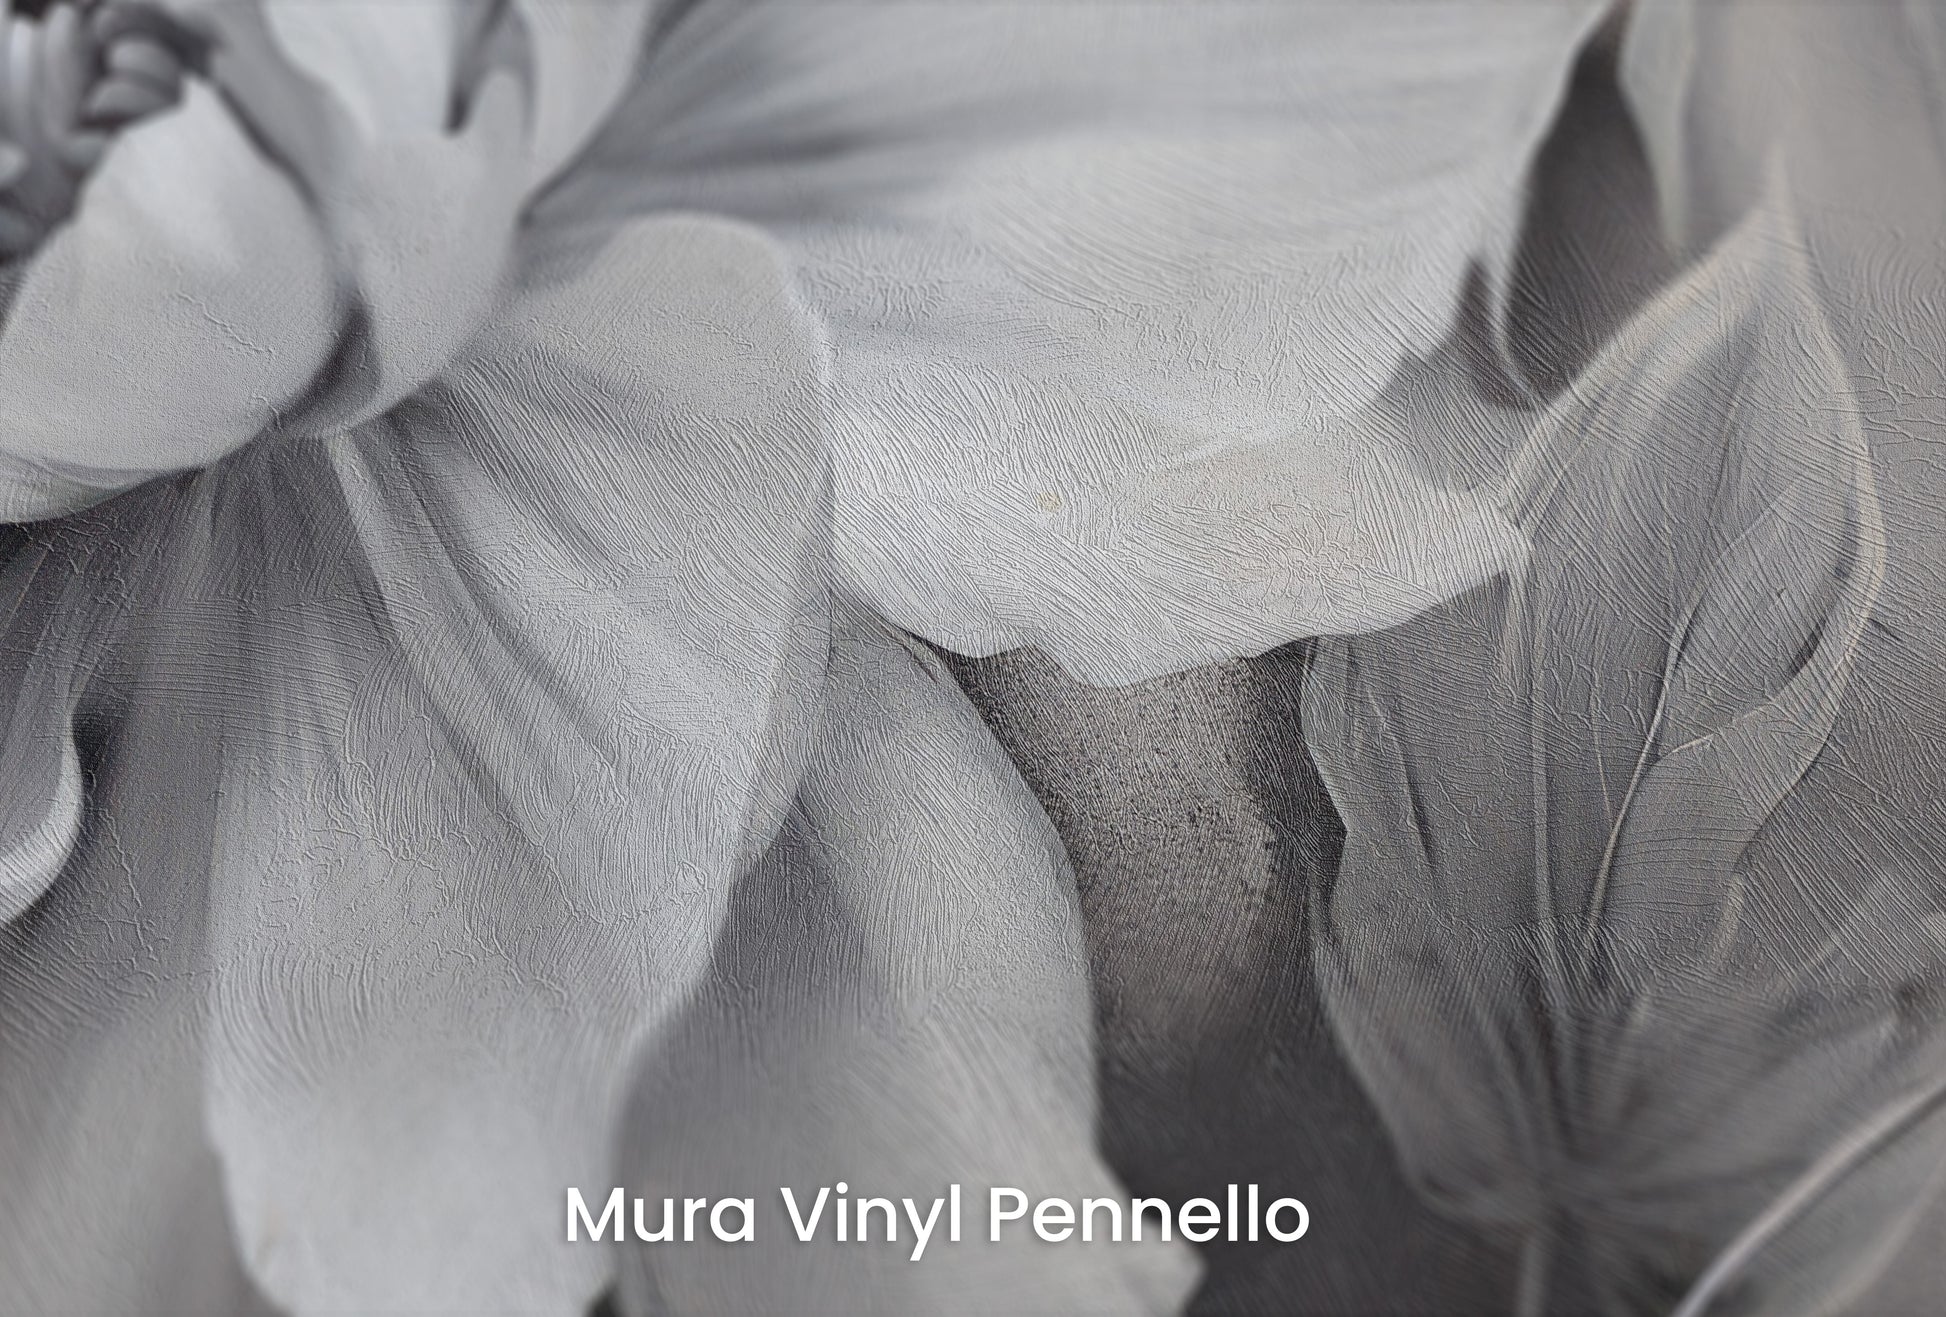 Zbliżenie na artystyczną fototapetę o nazwie NOCTURNAL FLORAL WHISPERS na podłożu Mura Vinyl Pennello - faktura pociągnięć pędzla malarskiego.